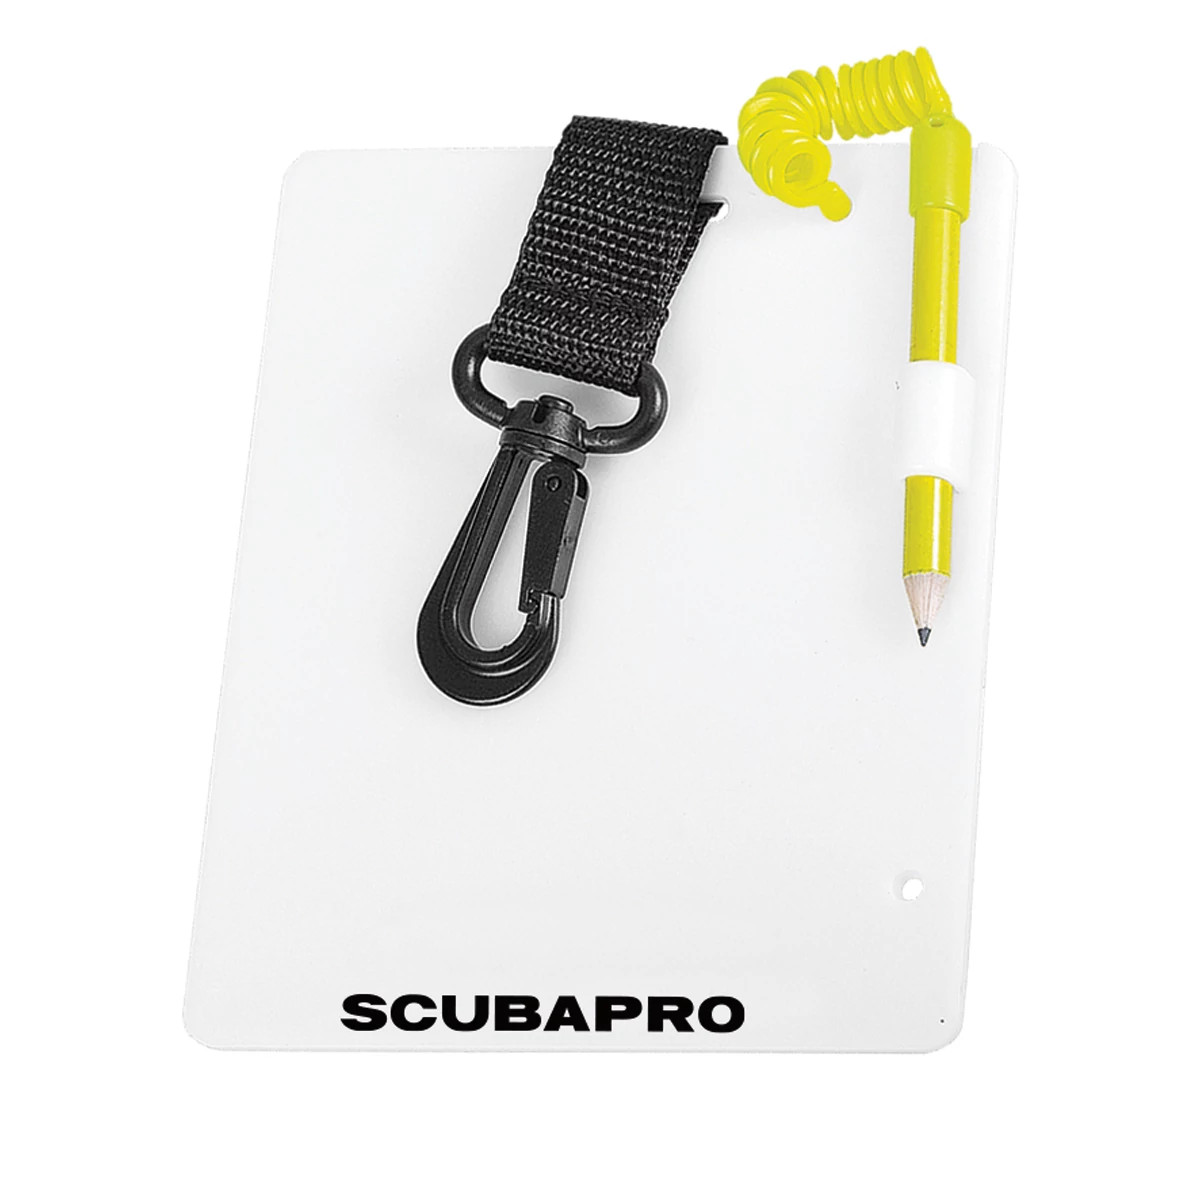 ScubaPro FS-1.5 Dive Compass cpl Scuba Diving Wrist Compass 